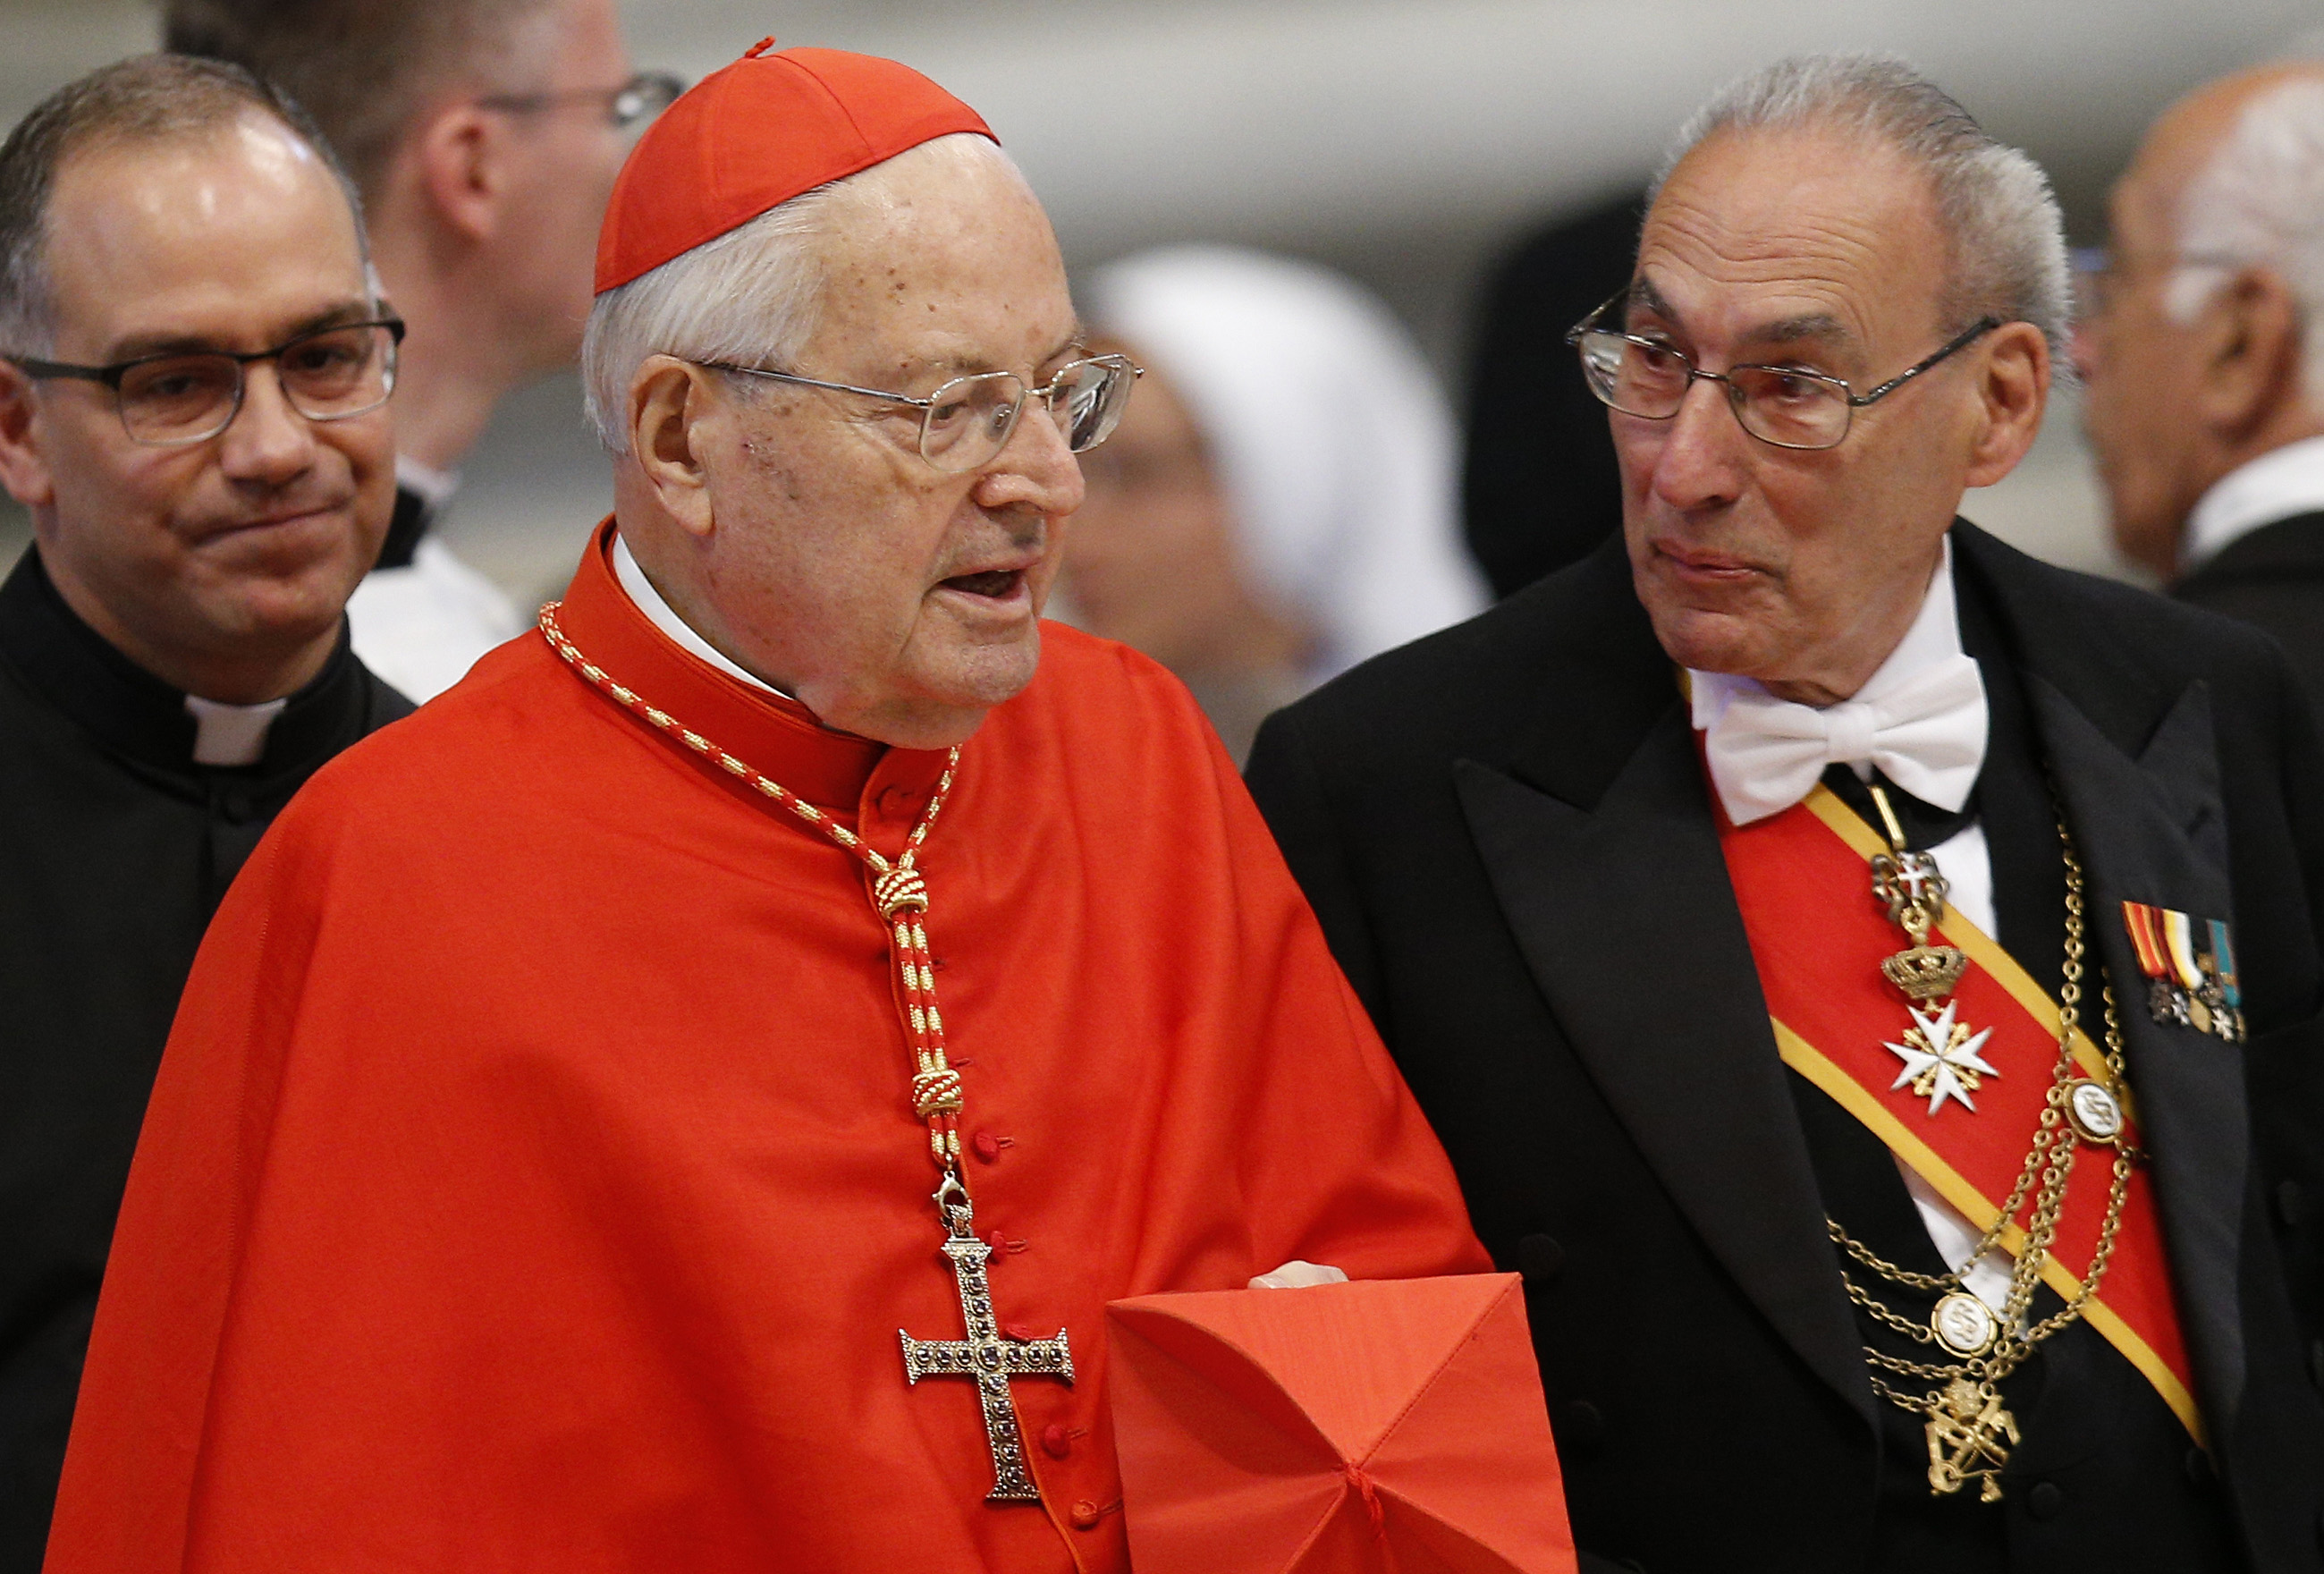 Fallece el cardenal Sodano, exmano derecha de Juan Pablo II y Benedicto XVI